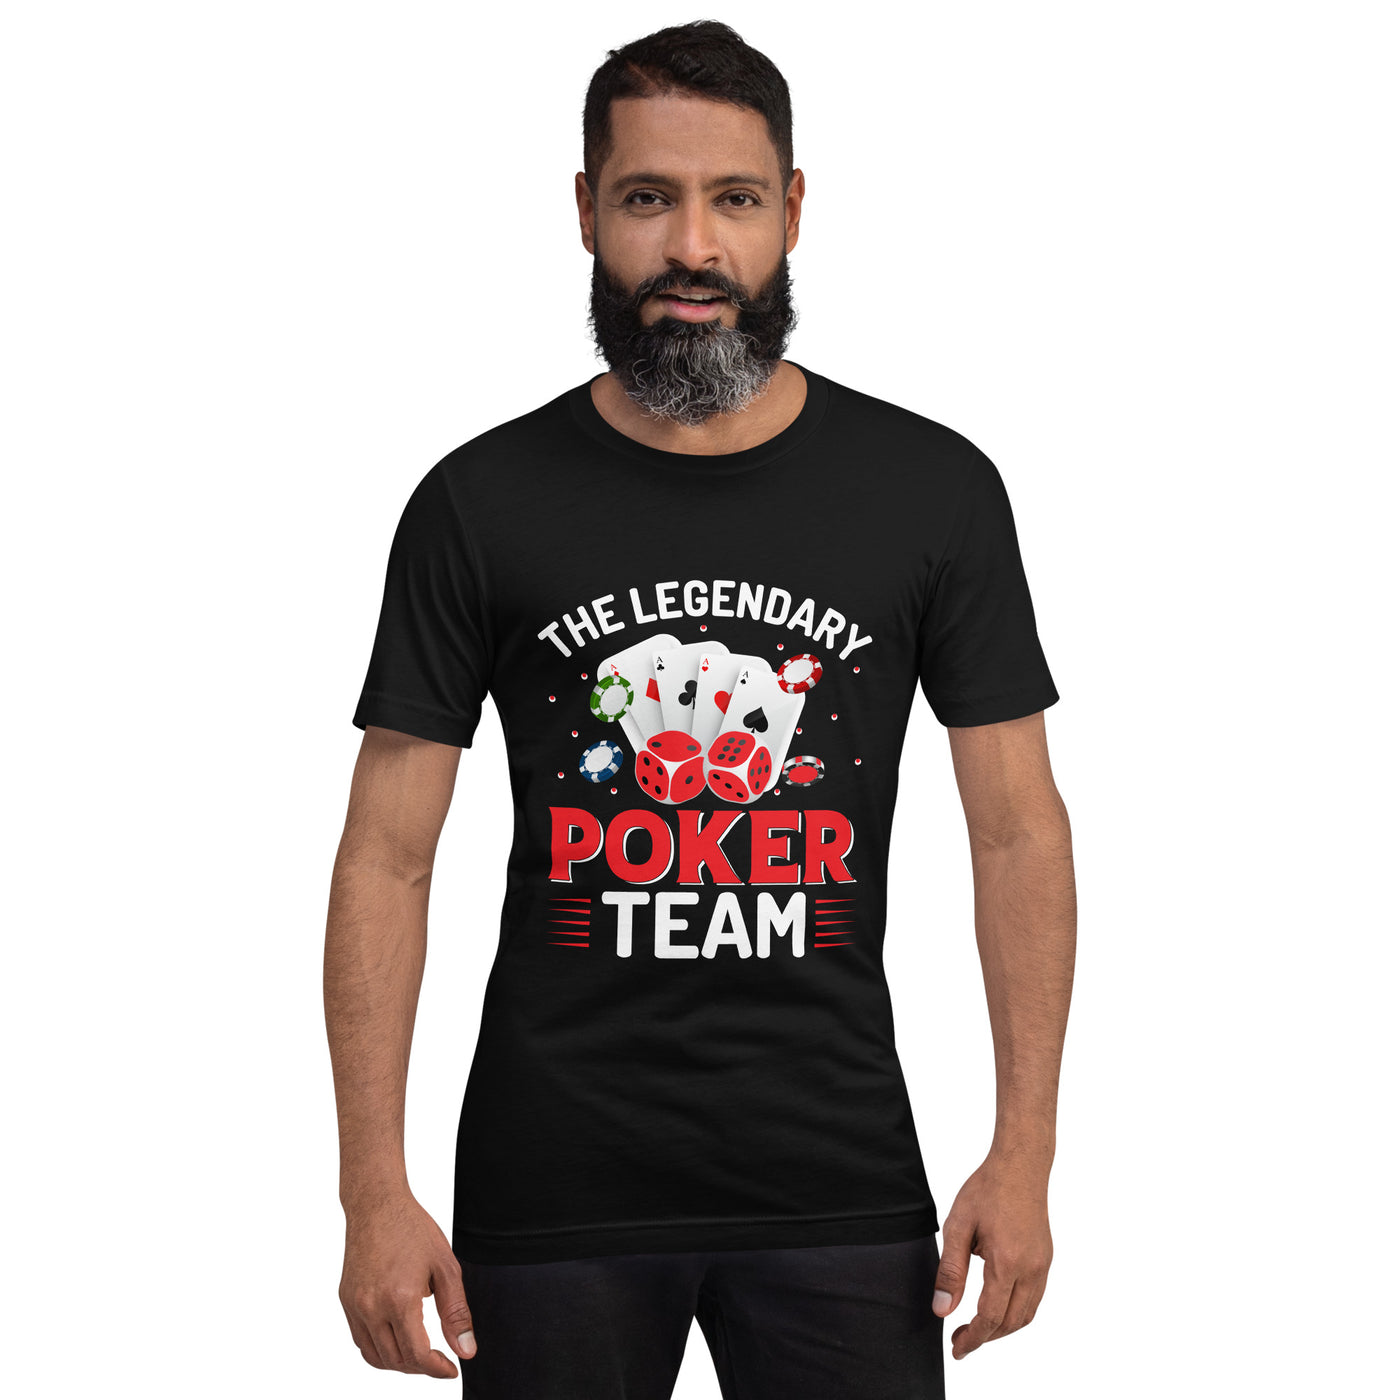 The Legendary Poker Team - Unisex t-shirt